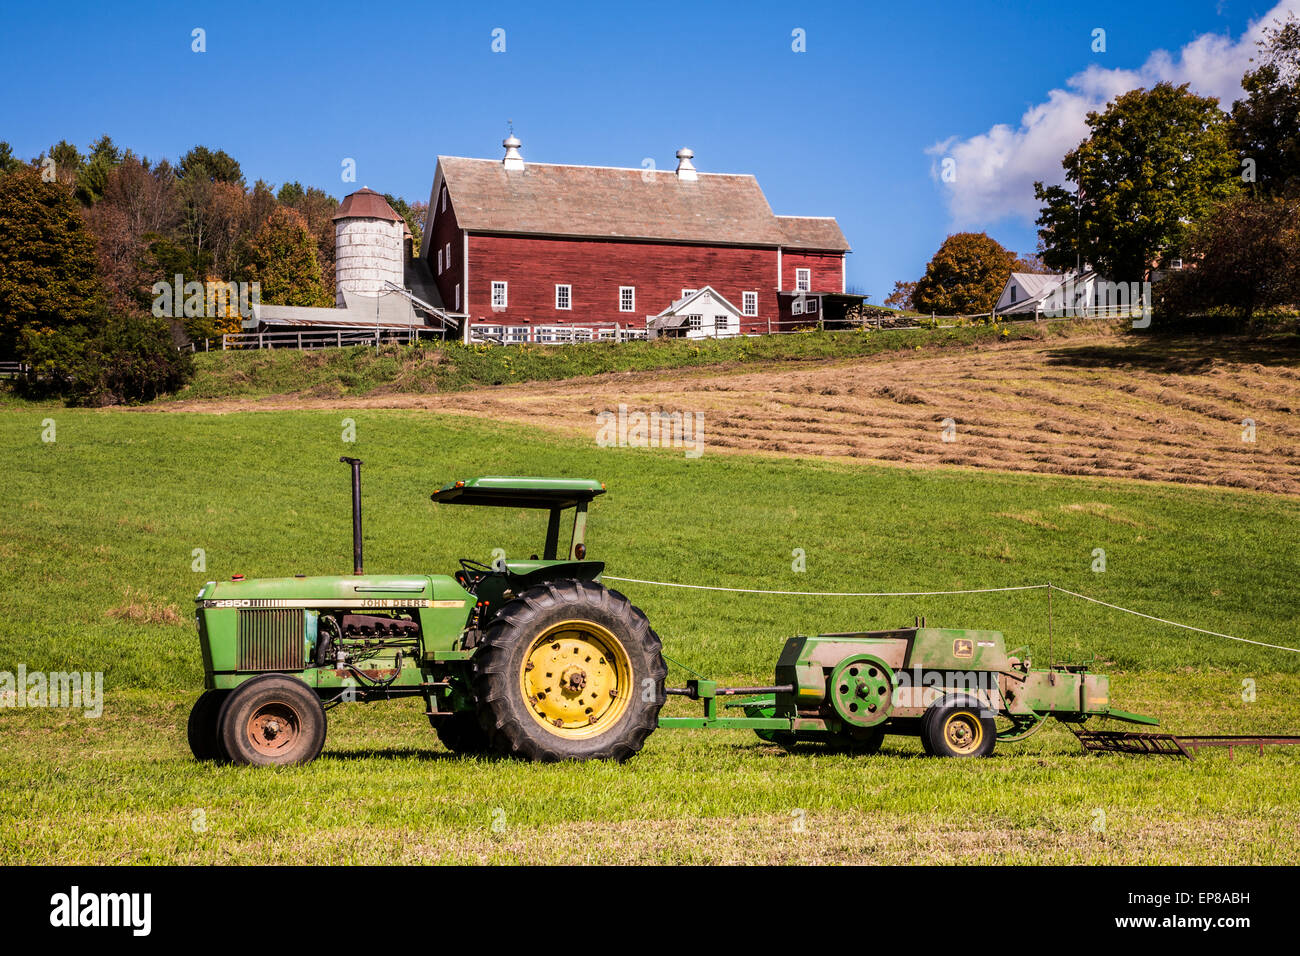 Farm, rote Scheune und Traktor Herbst landschaftlich reizvoll in Vermont Farm, New England Herbst USA, Vintage Traktoren Farmszene Scheunen Ackerland Stockfoto